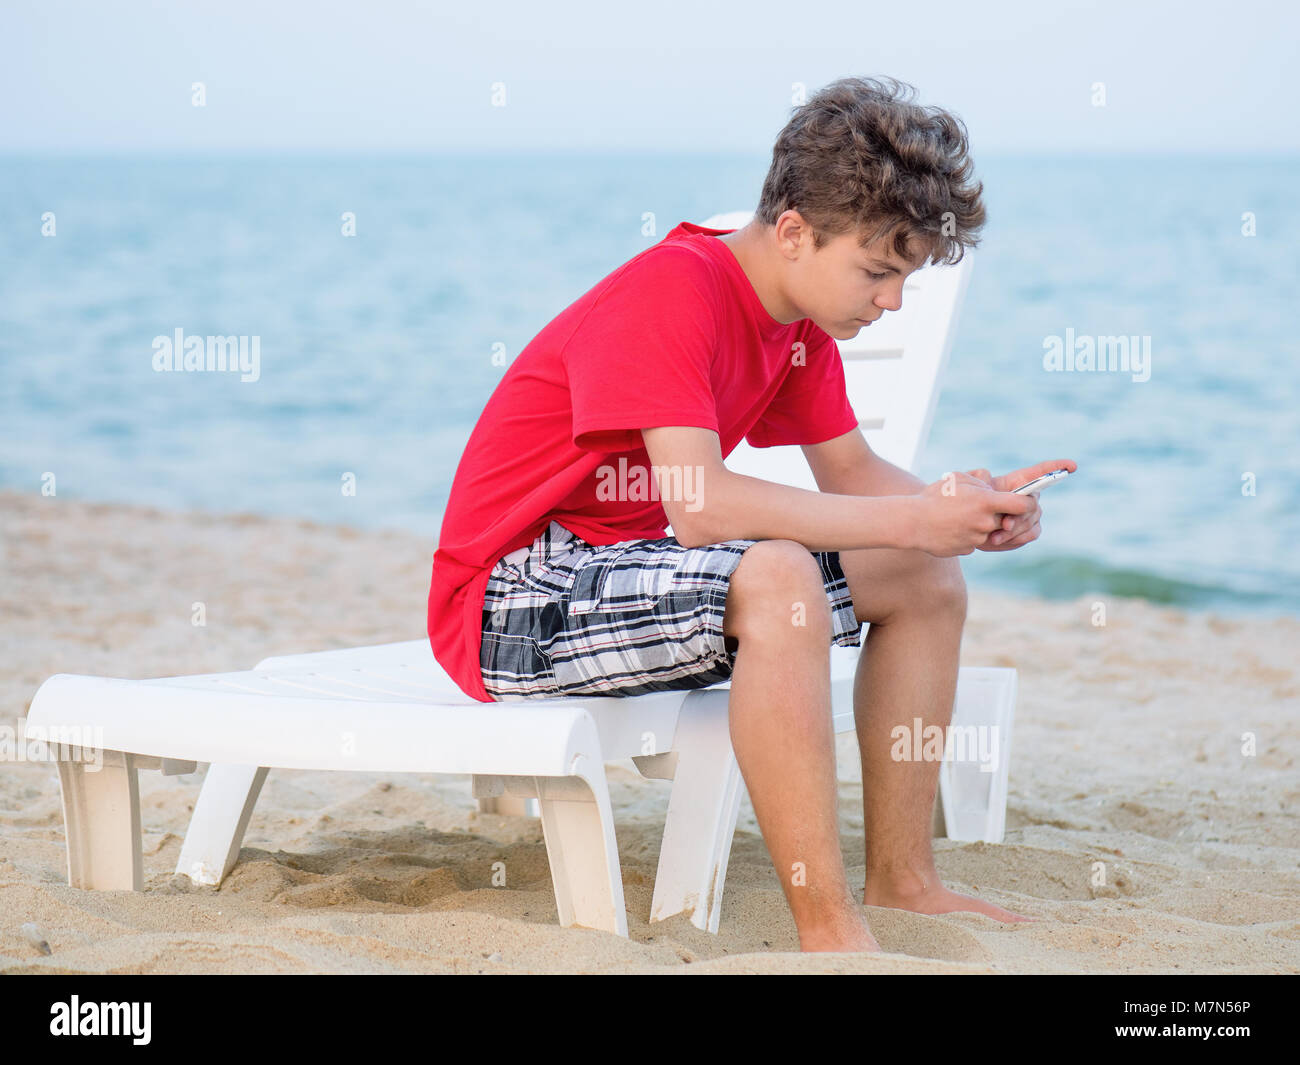 Jugendlich Junge am Strand Stockfoto